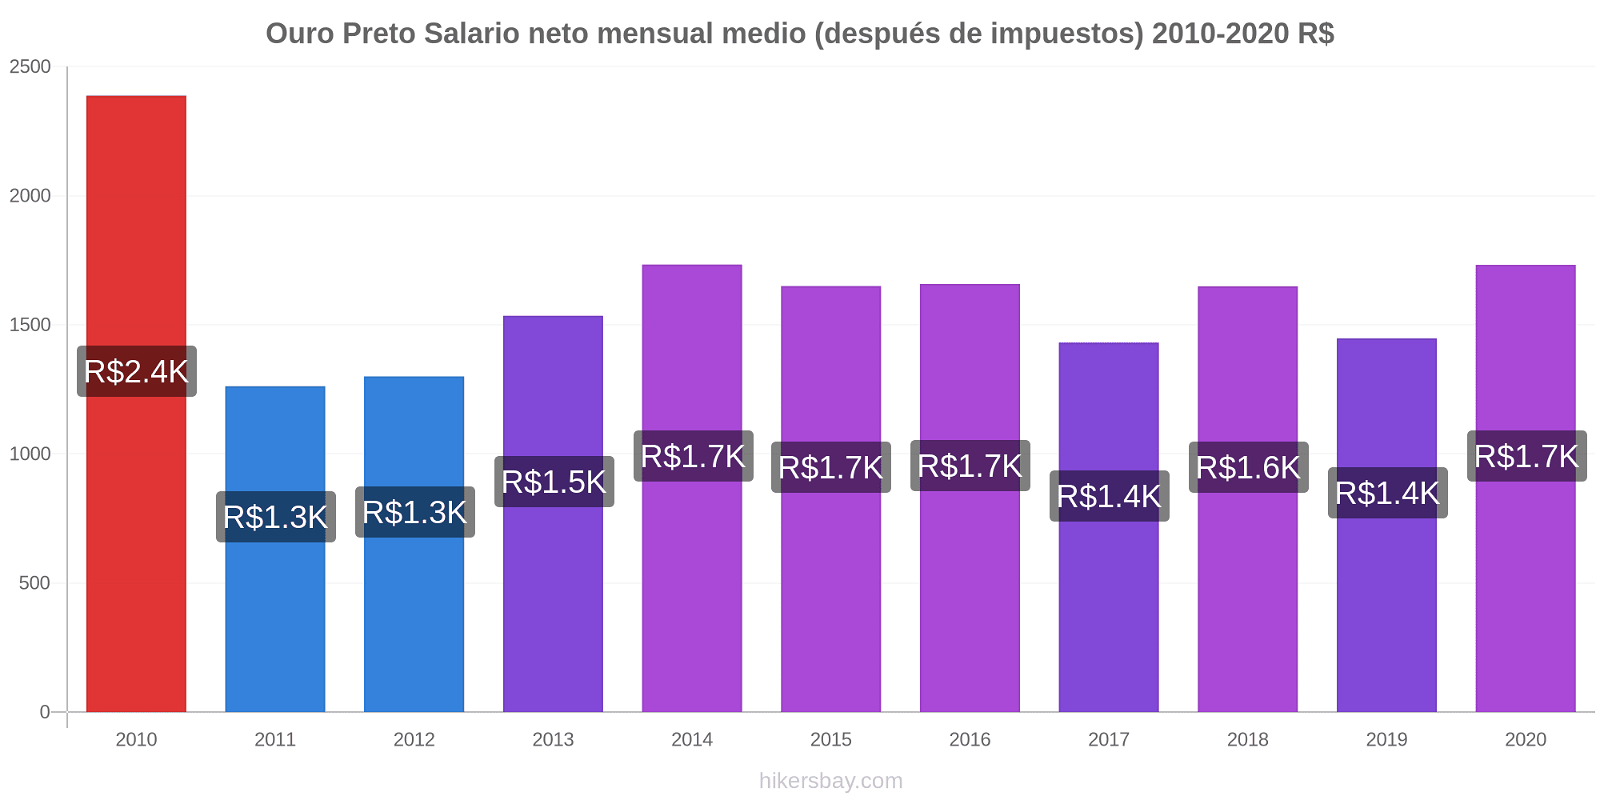 Ouro Preto cambios de precios Promedio mensual del salario neto (después de pagar impuestos) hikersbay.com